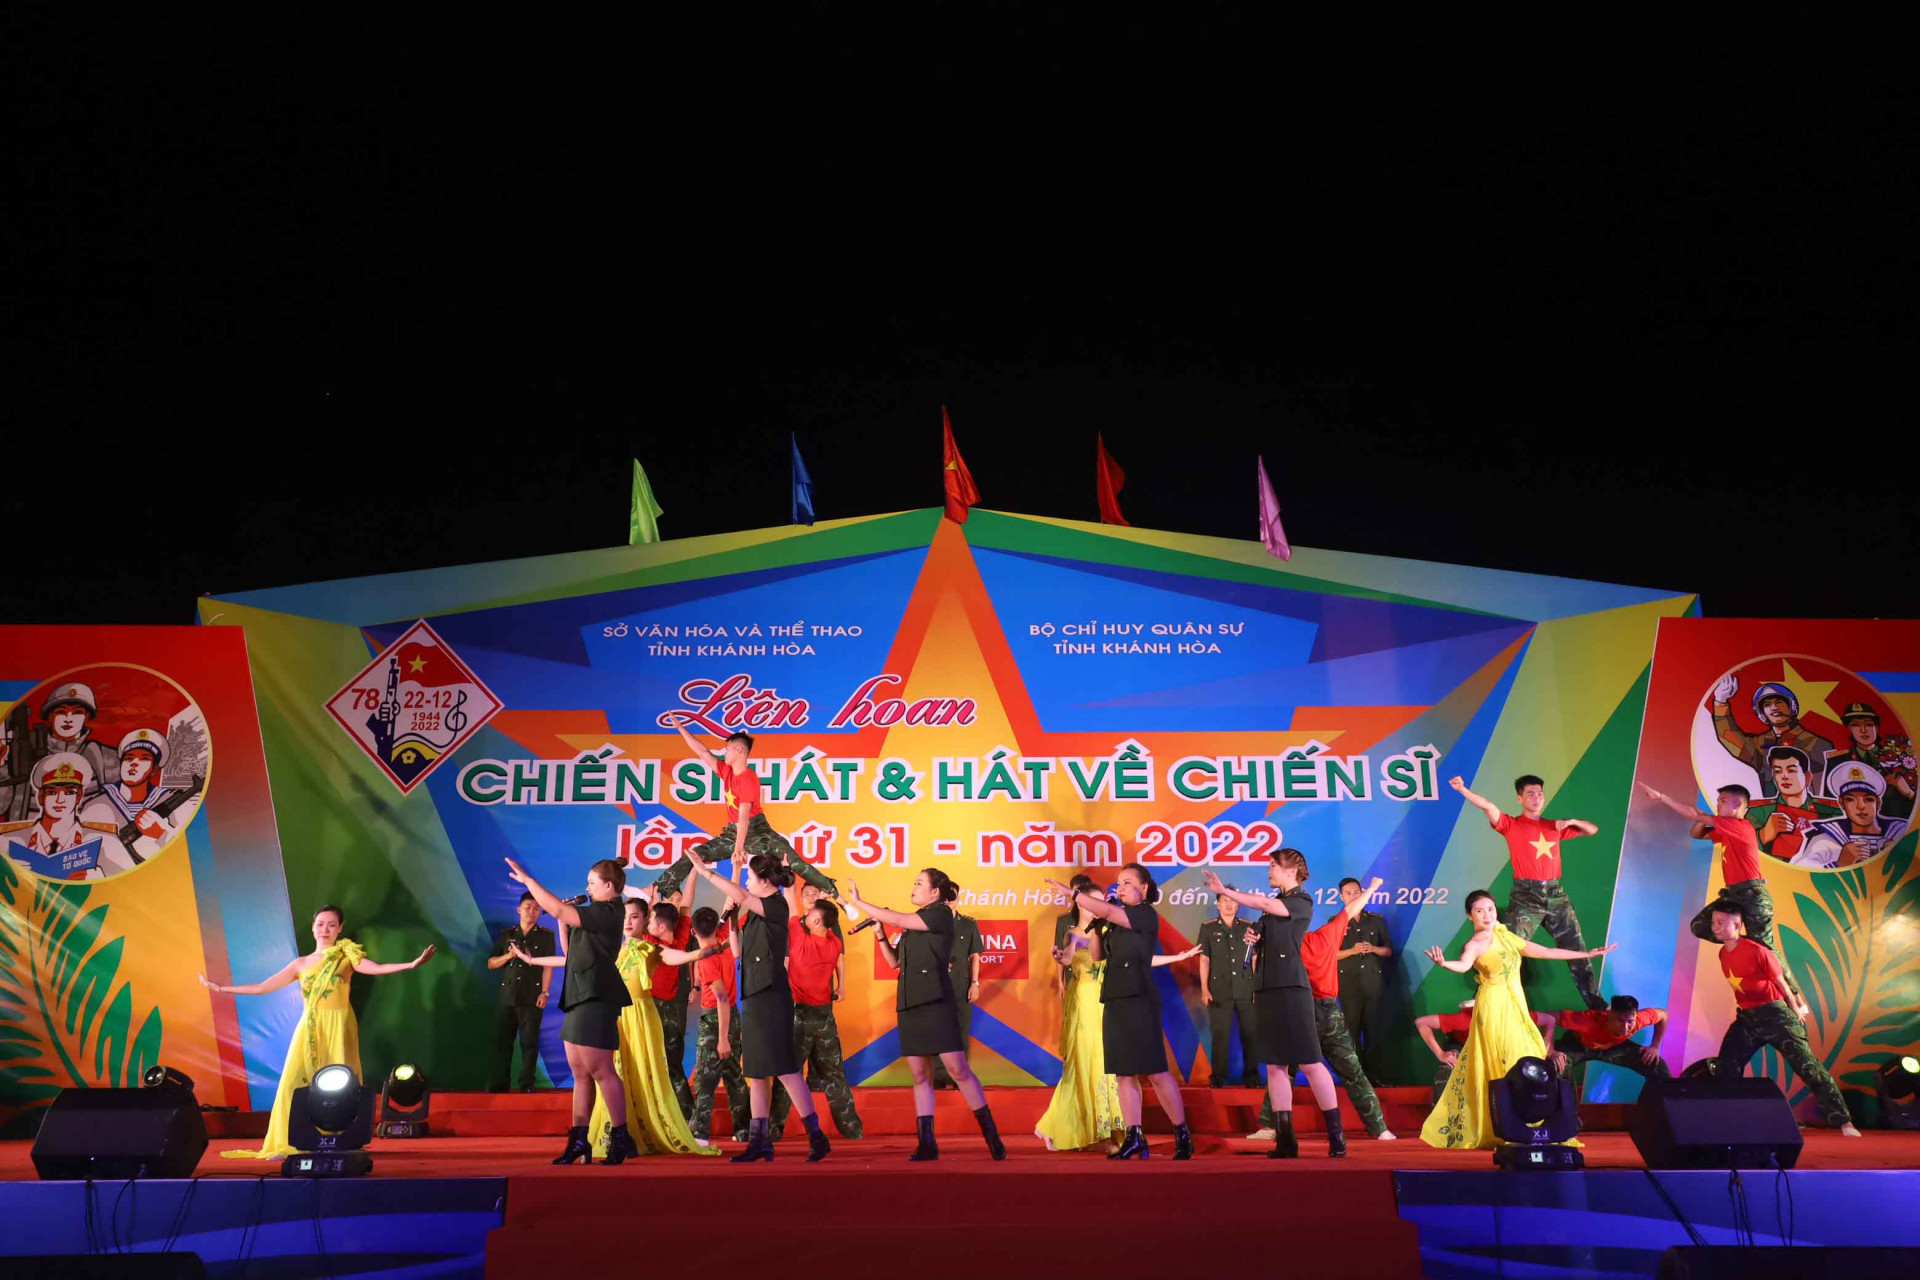 Phần thi diễn của đoàn nghệ thuật quần chúng Bộ Chỉ huy Bộ đội Biên phòng tỉnh Khánh Hòa đã ghi điểm với khán giả bởi những tiết mục có sự đầu tư dàn dựng công phu cả về nội dung và hình thức thể hiện. 